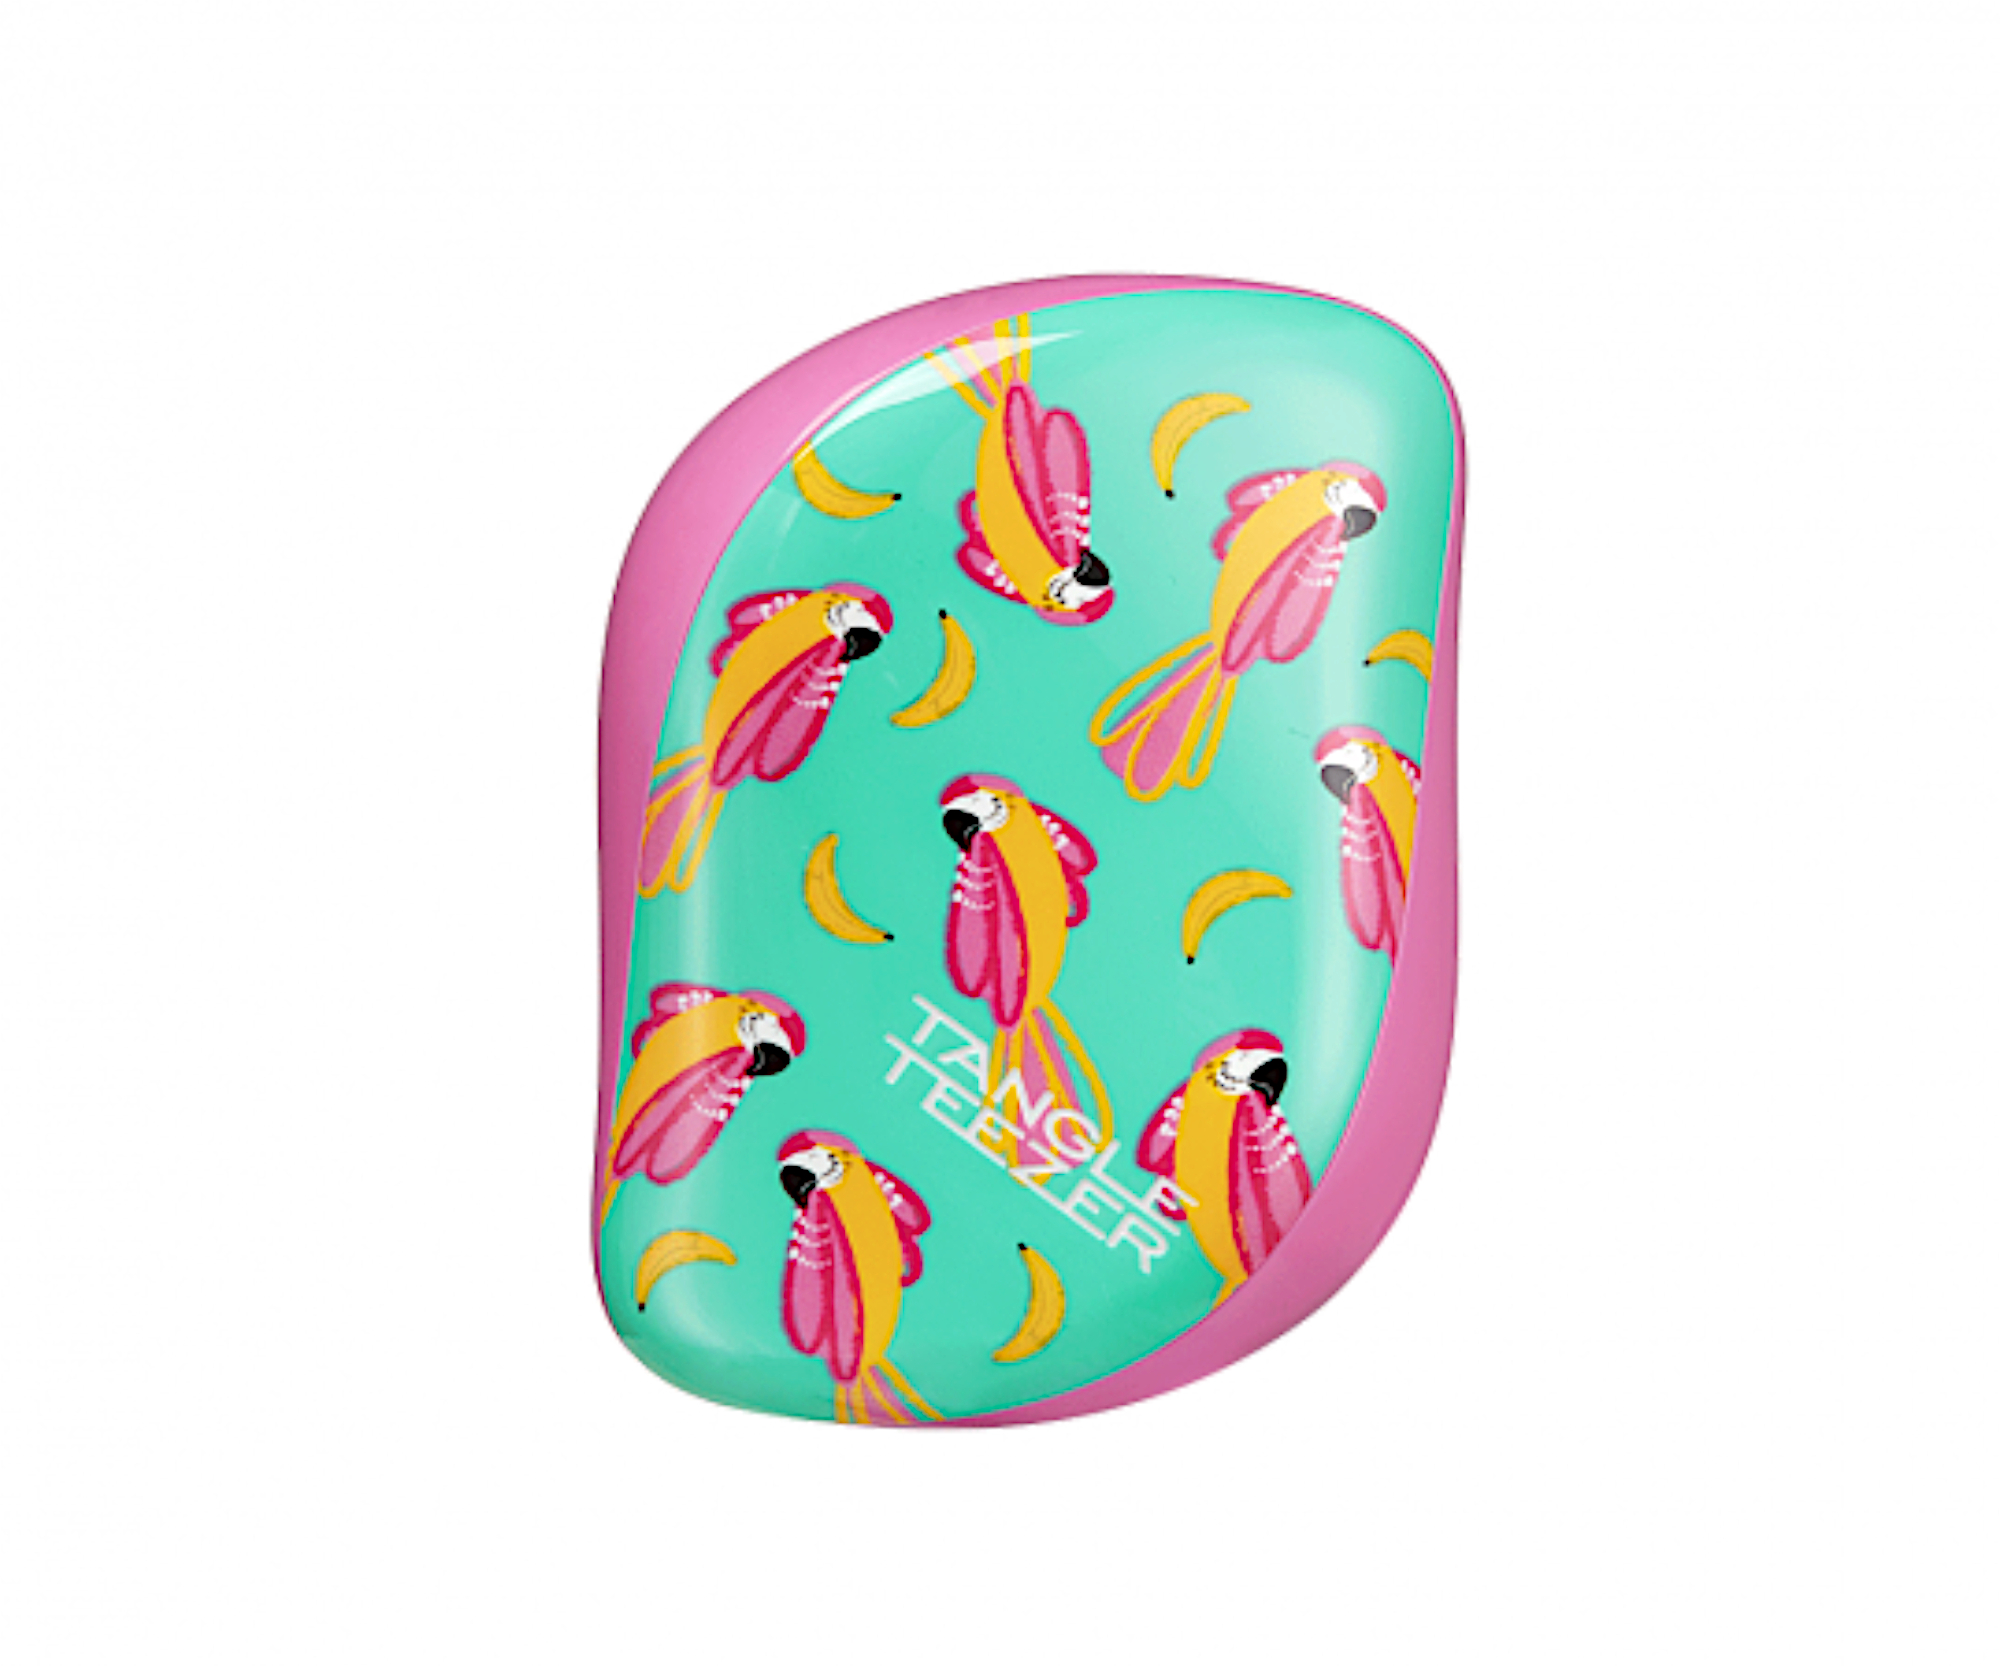 Kartáč na rozčesávání vlasů Tangle Teezer Compact Styler Paradise Bird - růžovo-tyrkysový (CS-ZCP-010221) + DÁREK ZDARMA